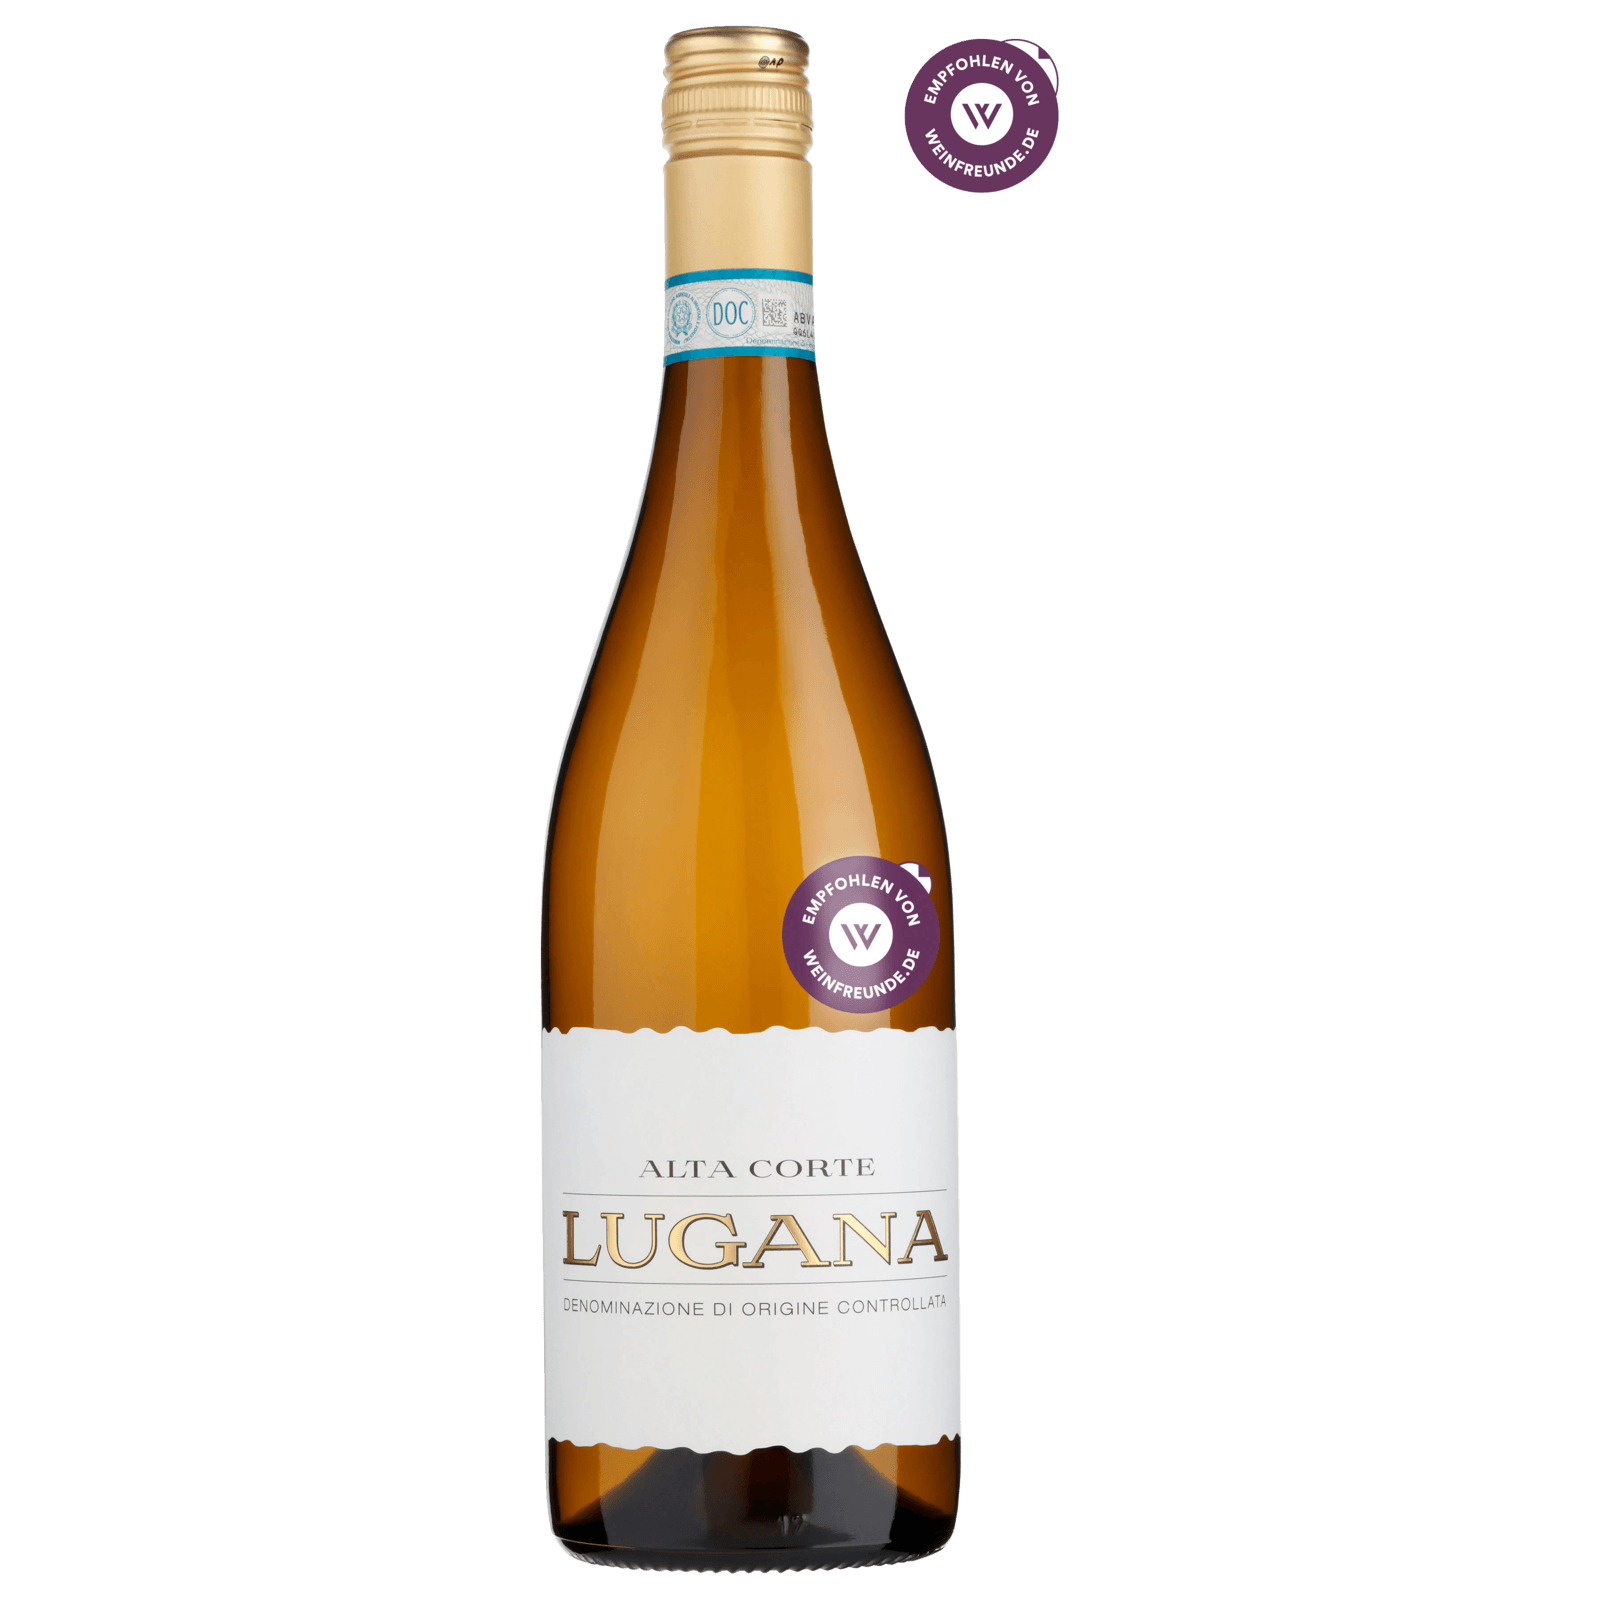 Alta Corte Weißwein bei REWE DOC online bestellen! 0,75l Lugana trocken